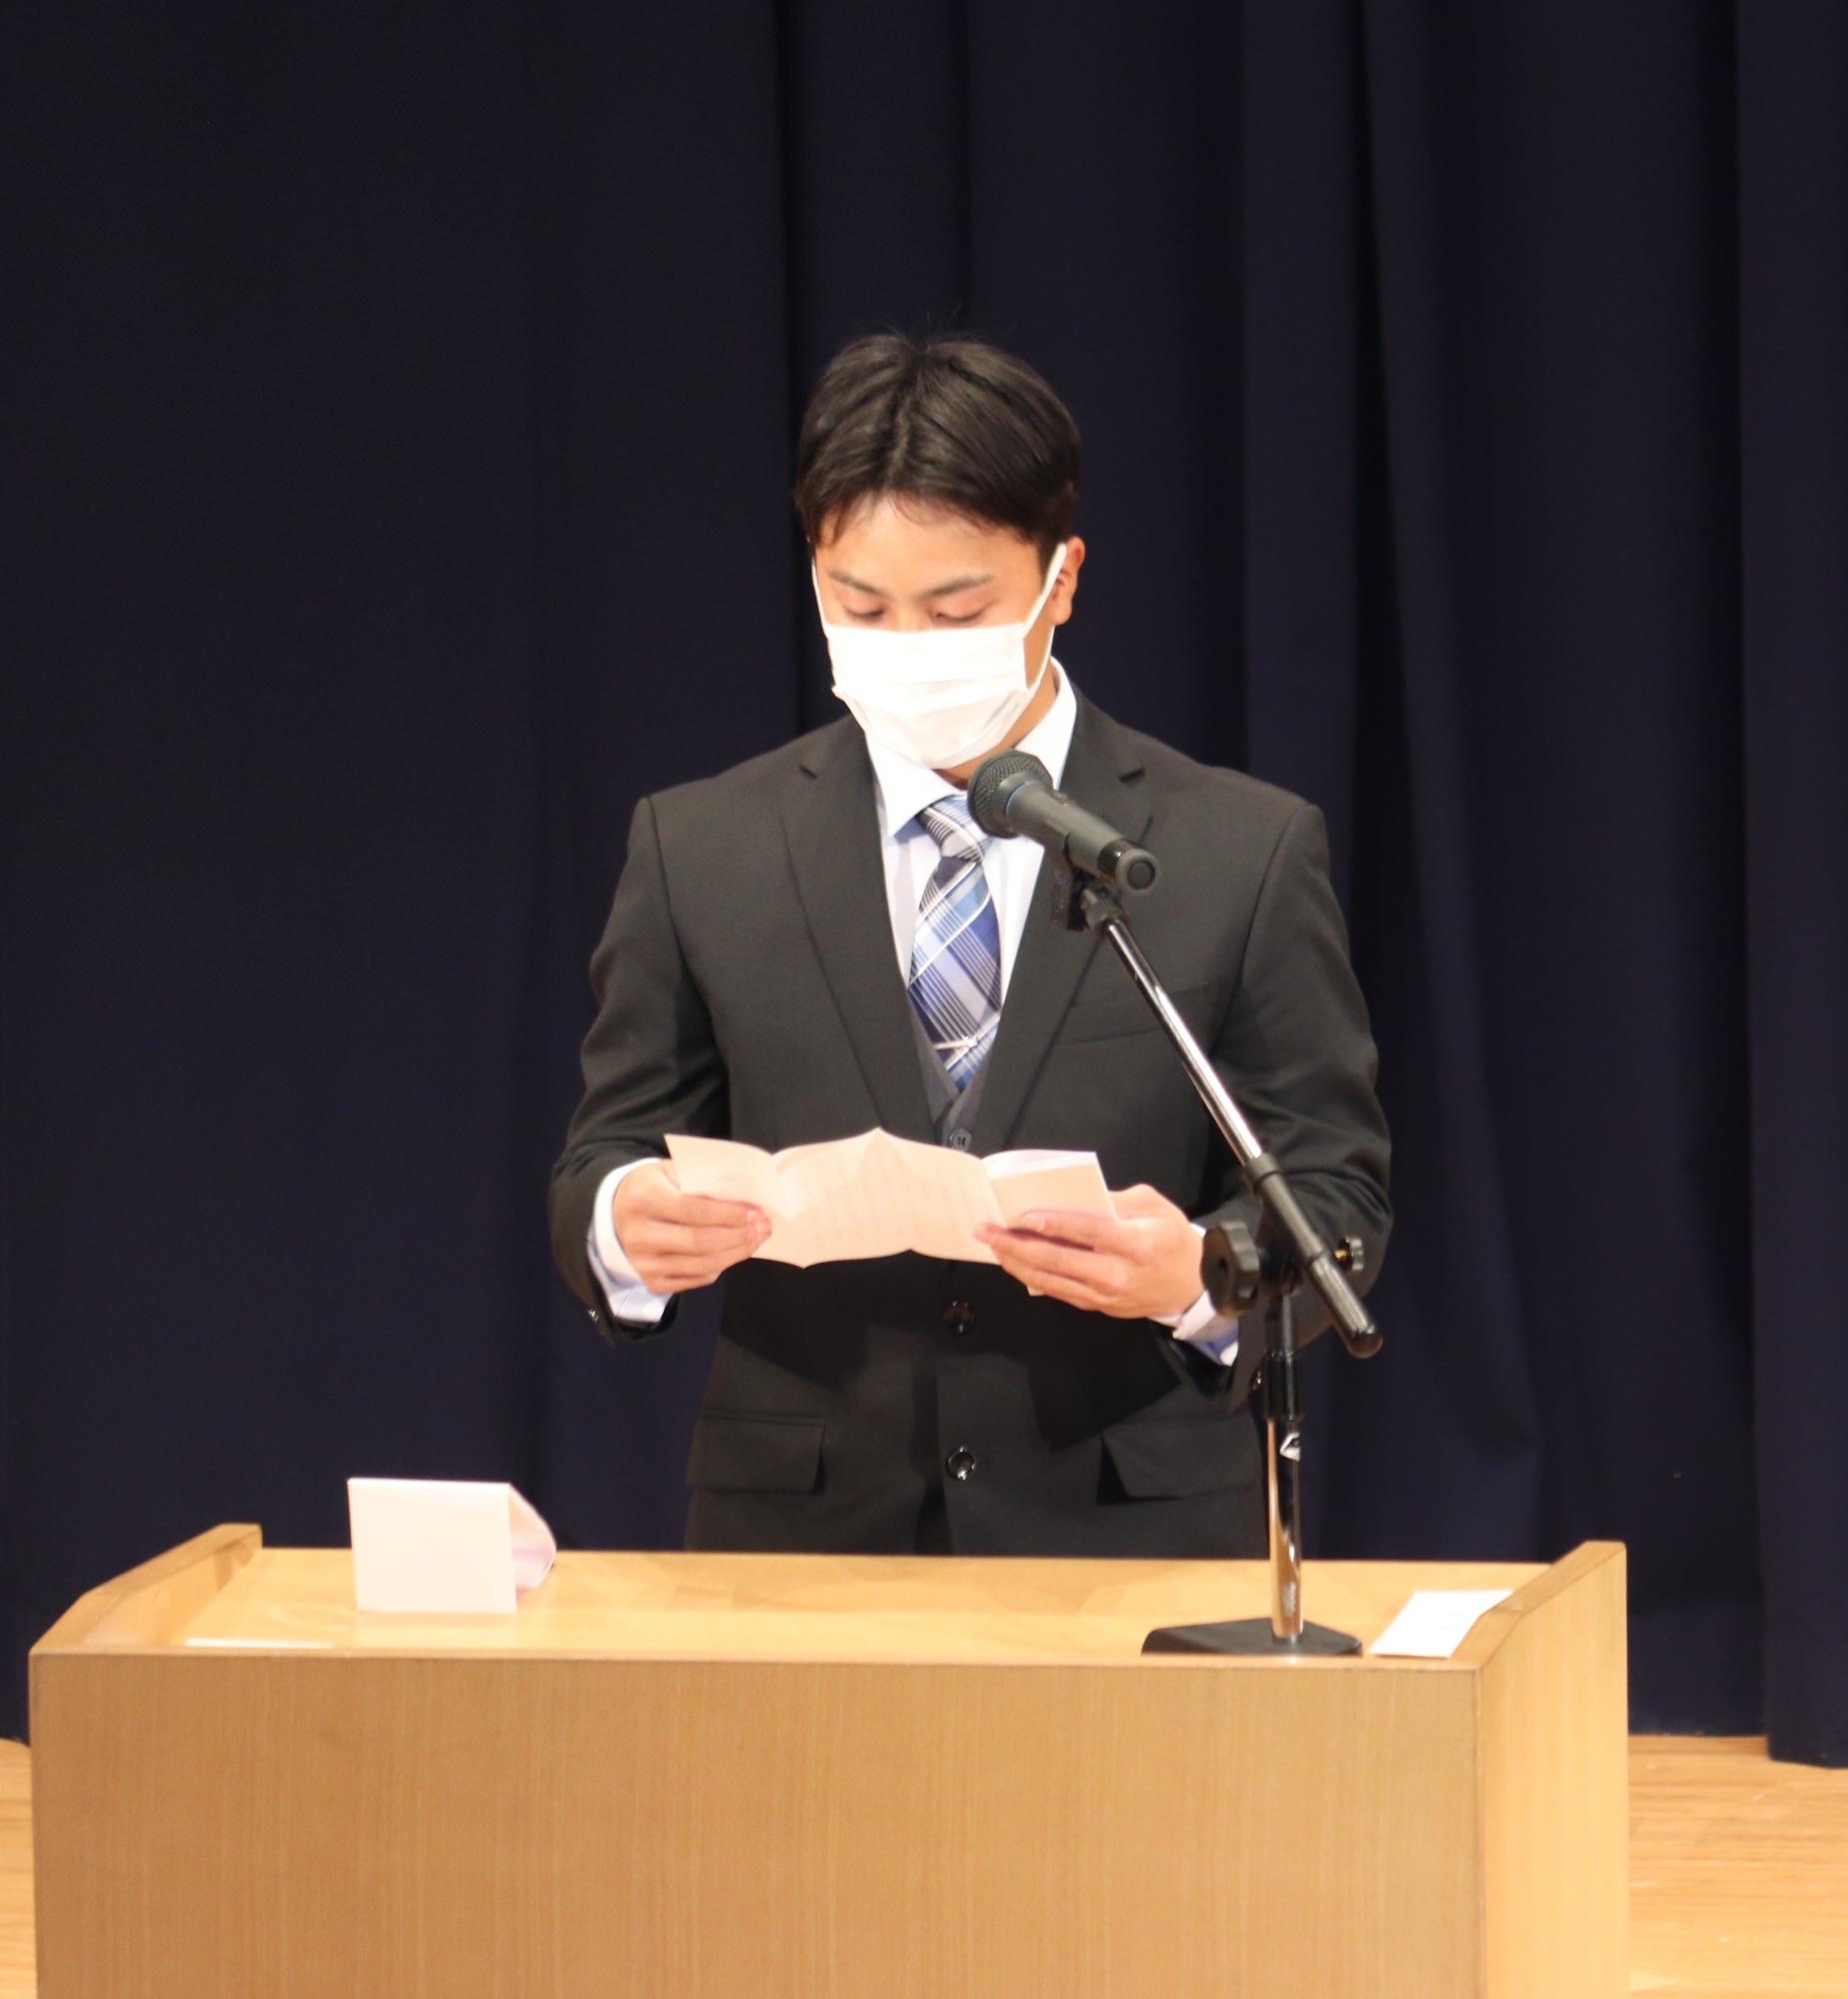 成人式実行委員長の米澤成志さんが挨拶している様子の写真